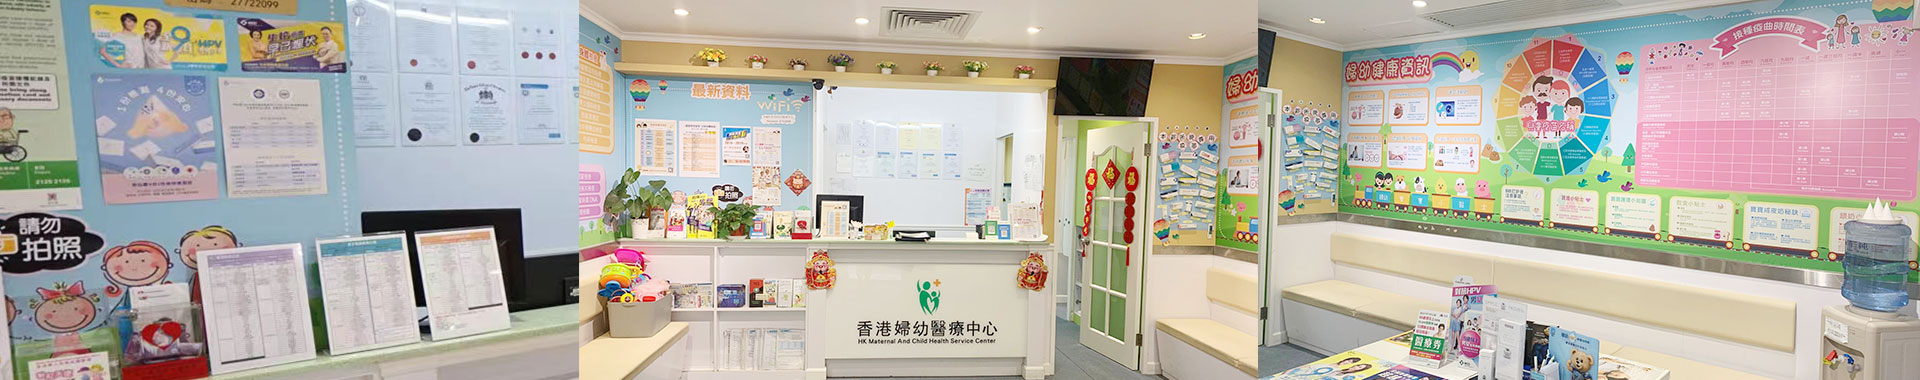 香港妇幼医疗检测